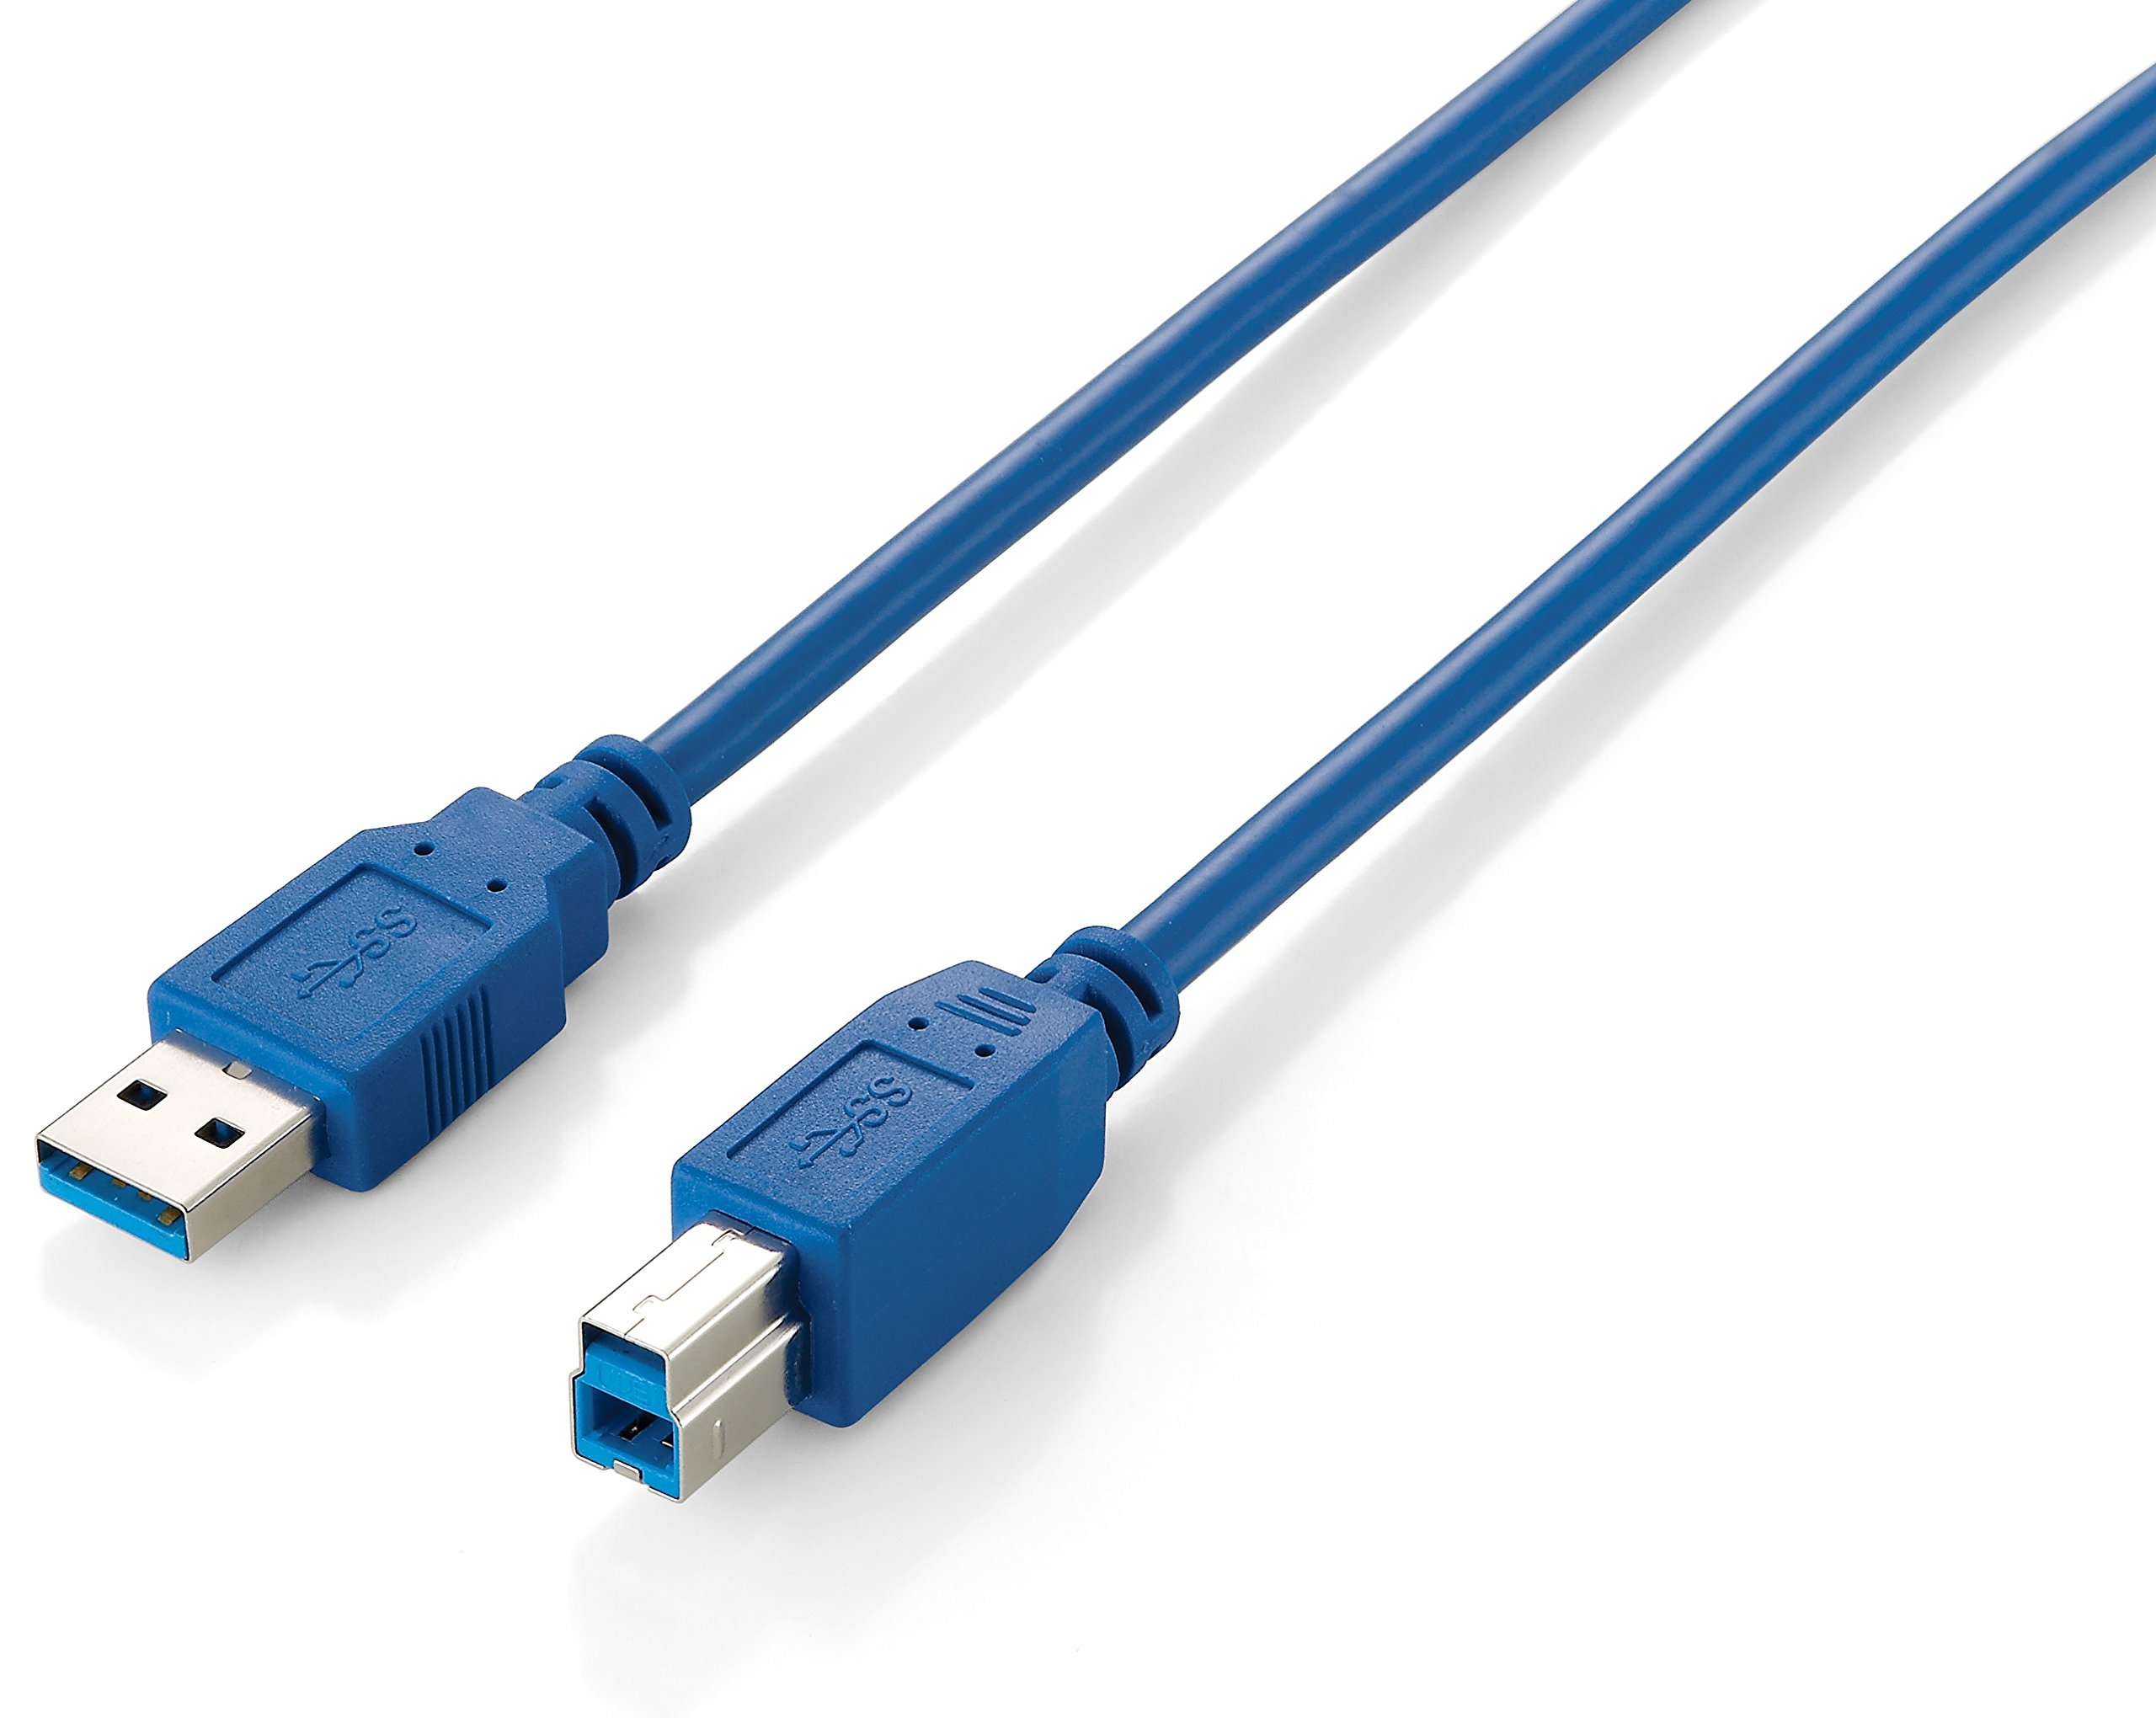 USB 3.0 CABLE A->B M/M 3,0M, BLUE